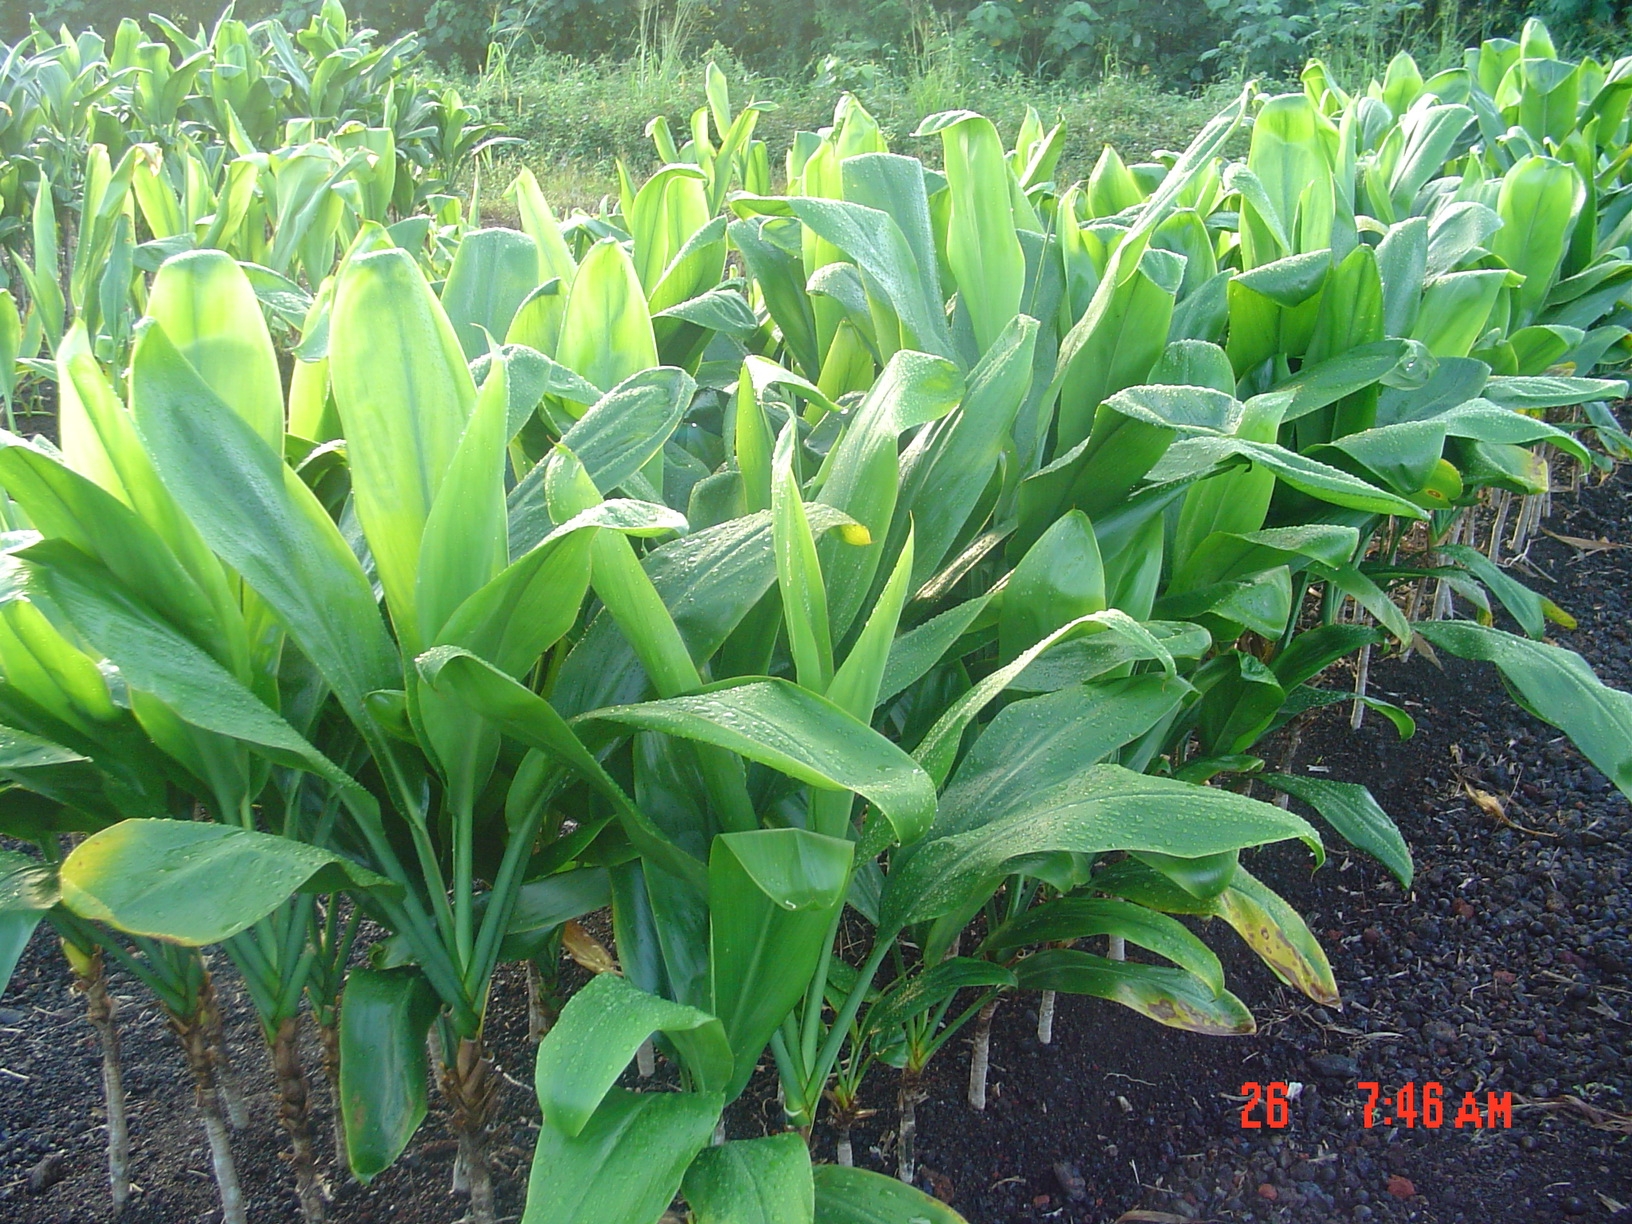 Ti plants grown at PKF, Inc. Image